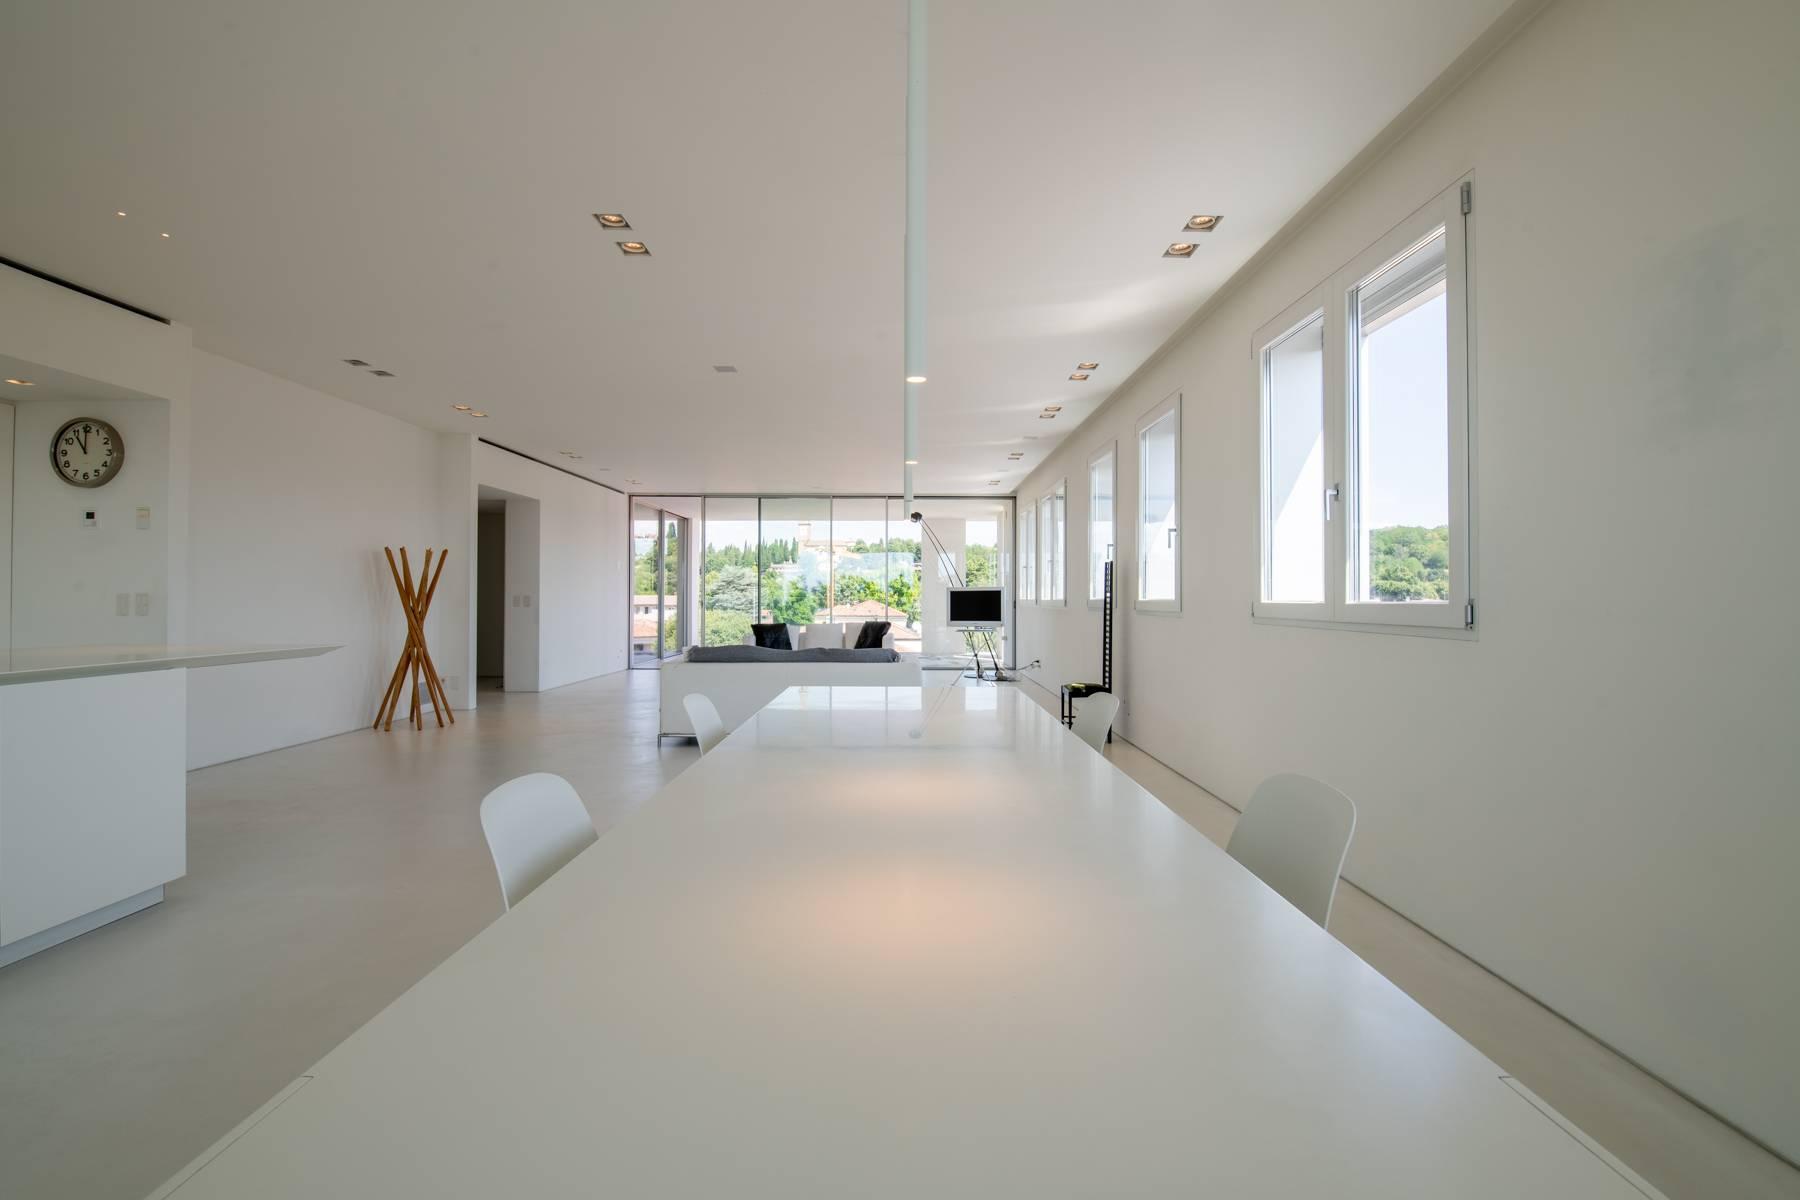 Penthouse élégant panoramique et à haute efficacité énergétique avec un design moderne raffiné - 5